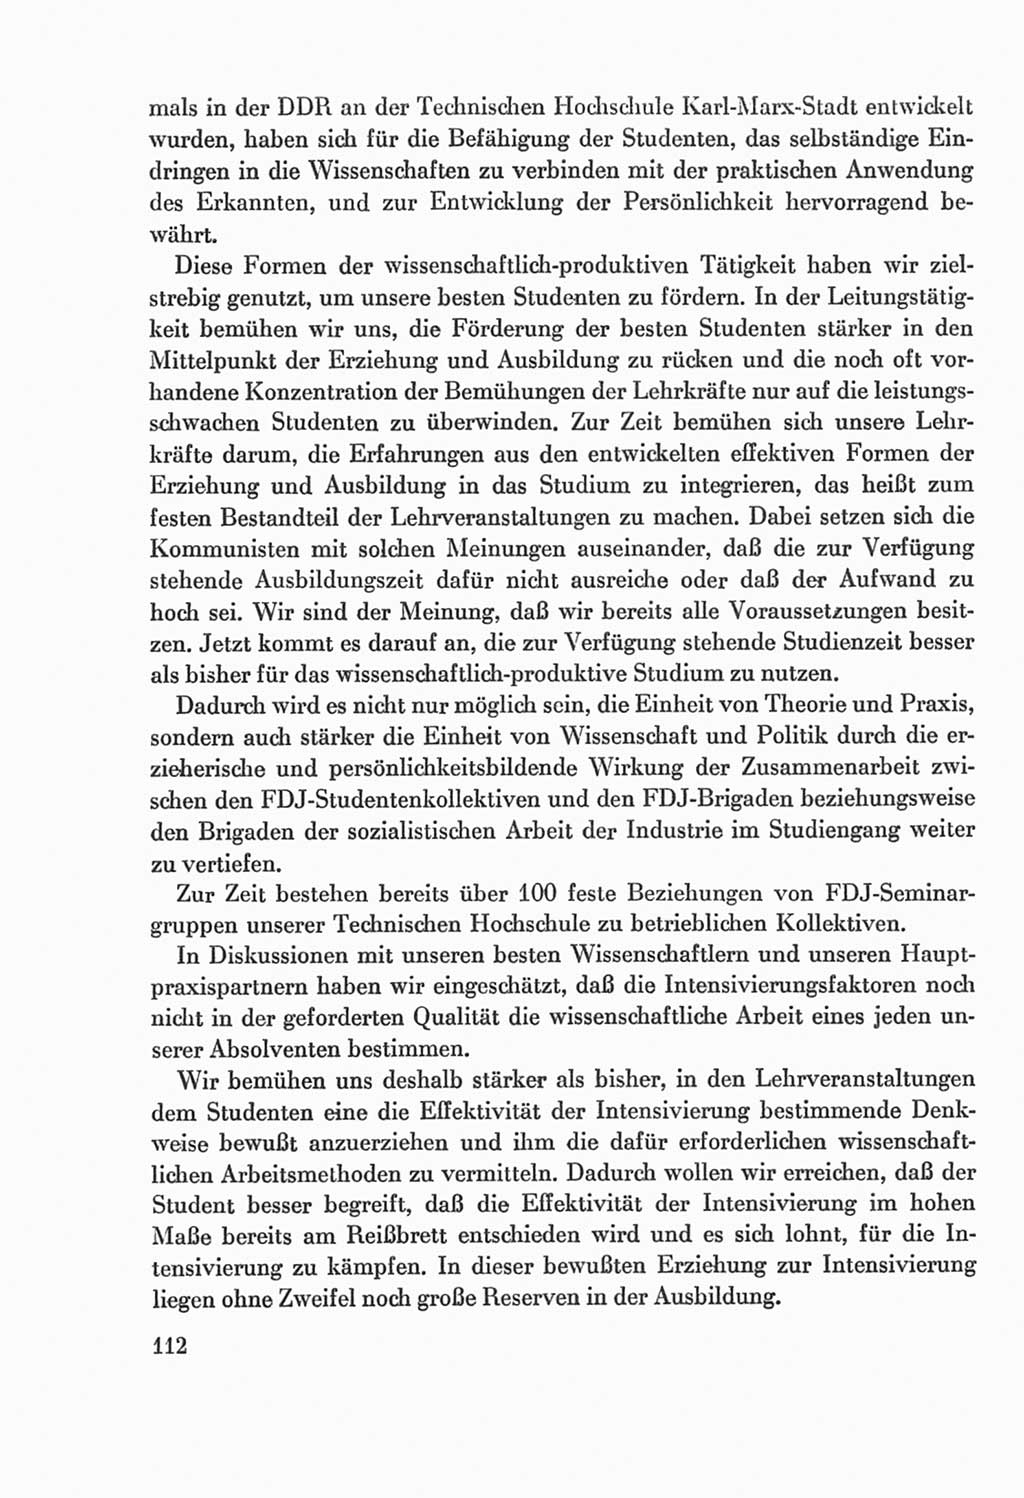 Protokoll der Verhandlungen des Ⅸ. Parteitages der Sozialistischen Einheitspartei Deutschlands (SED) [Deutsche Demokratische Republik (DDR)] 1976, Band 2, Seite 112 (Prot. Verh. Ⅸ. PT SED DDR 1976, Bd. 2, S. 112)